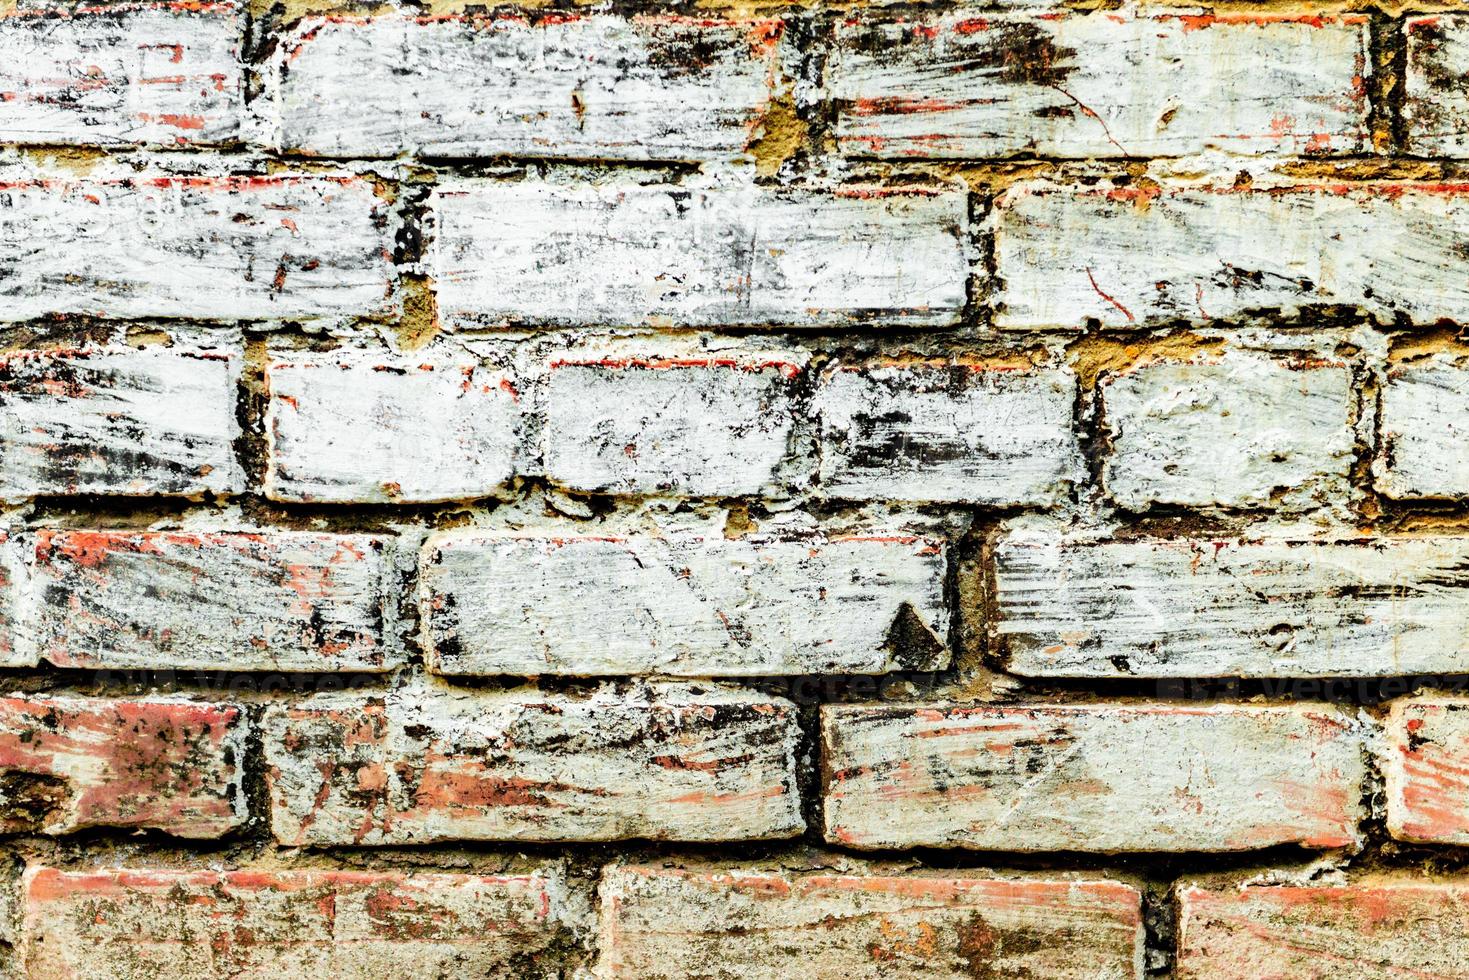 Textura de una pared de ladrillos con grietas y arañazos foto